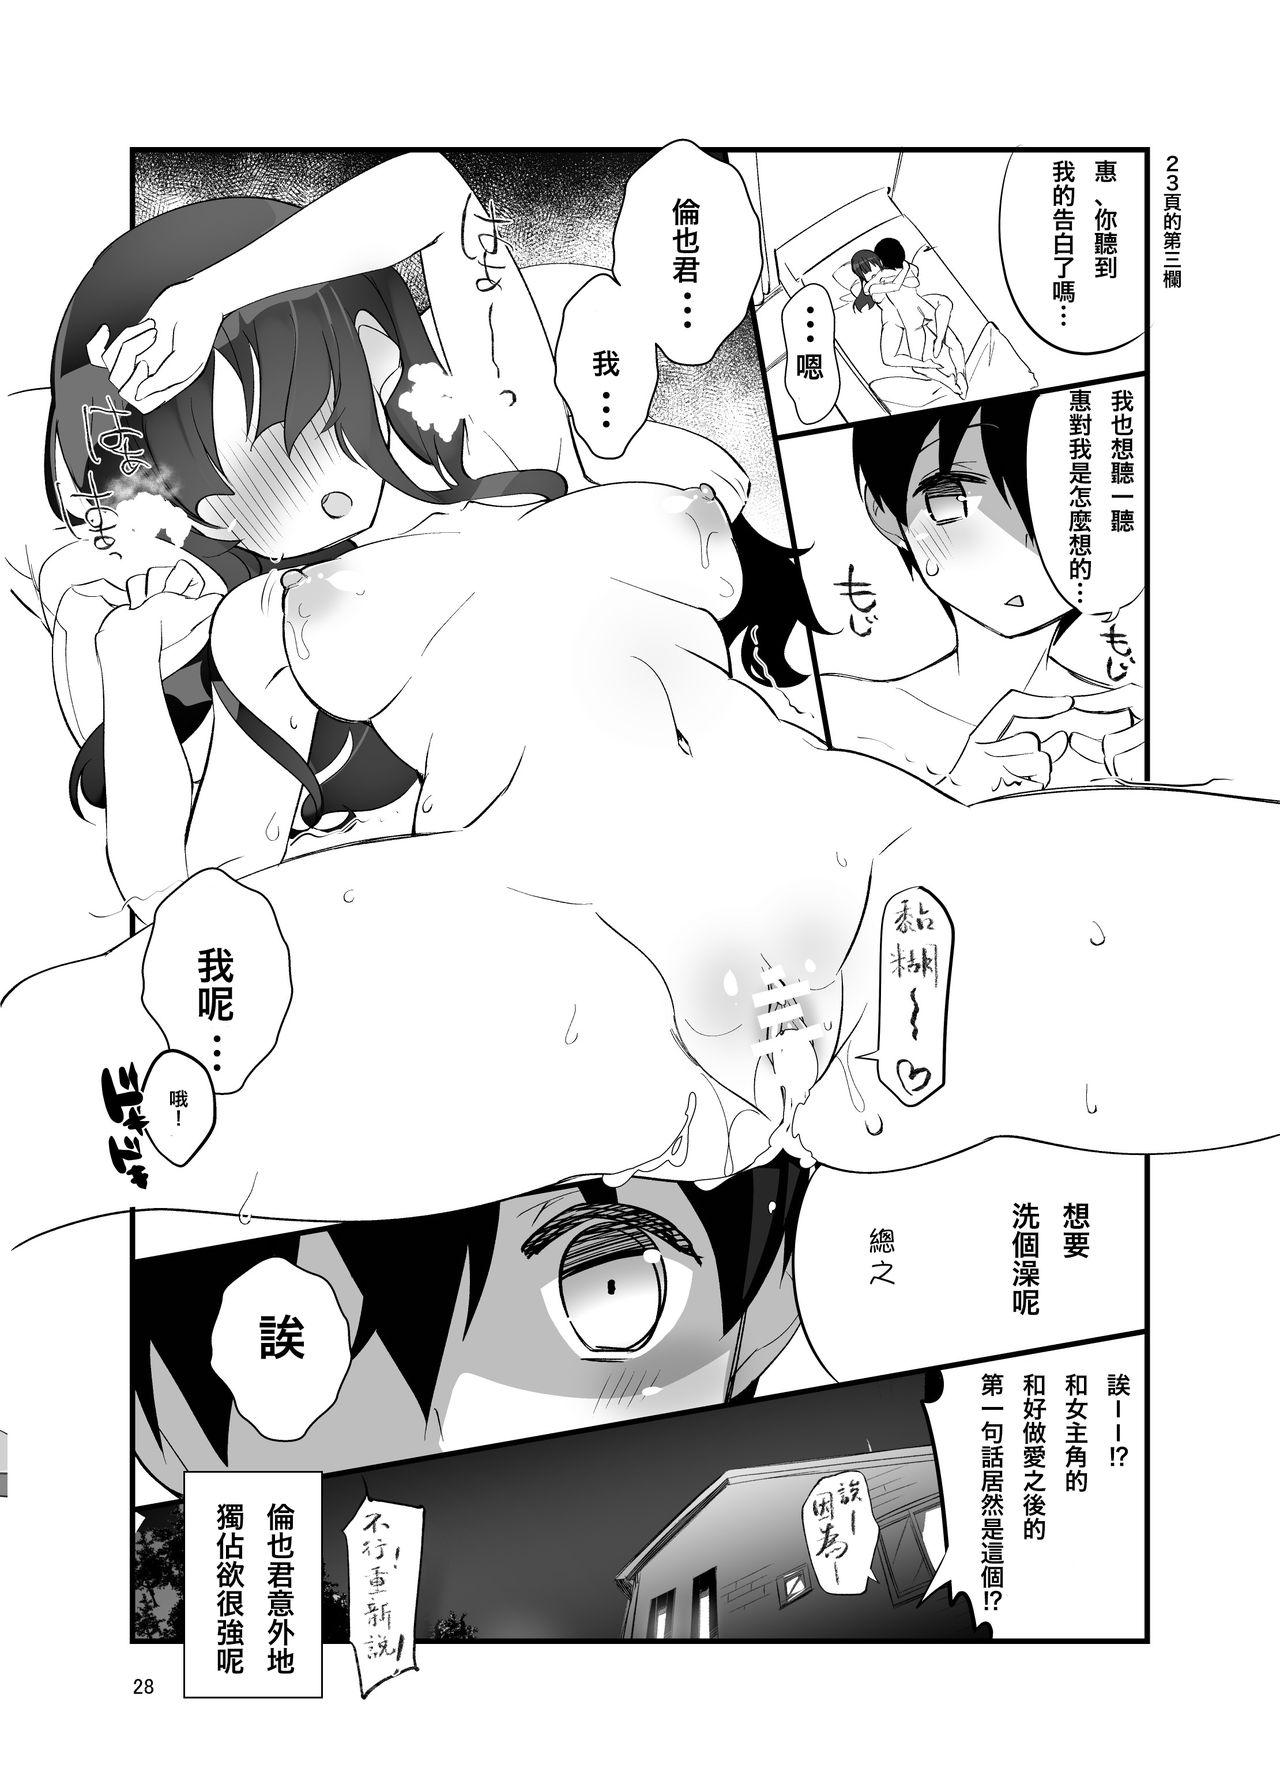 Hardfuck Futsukano wa Wotakare no Megane o Toru. 3 - Saenai heroine no sodatekata Missionary Position Porn - Page 29